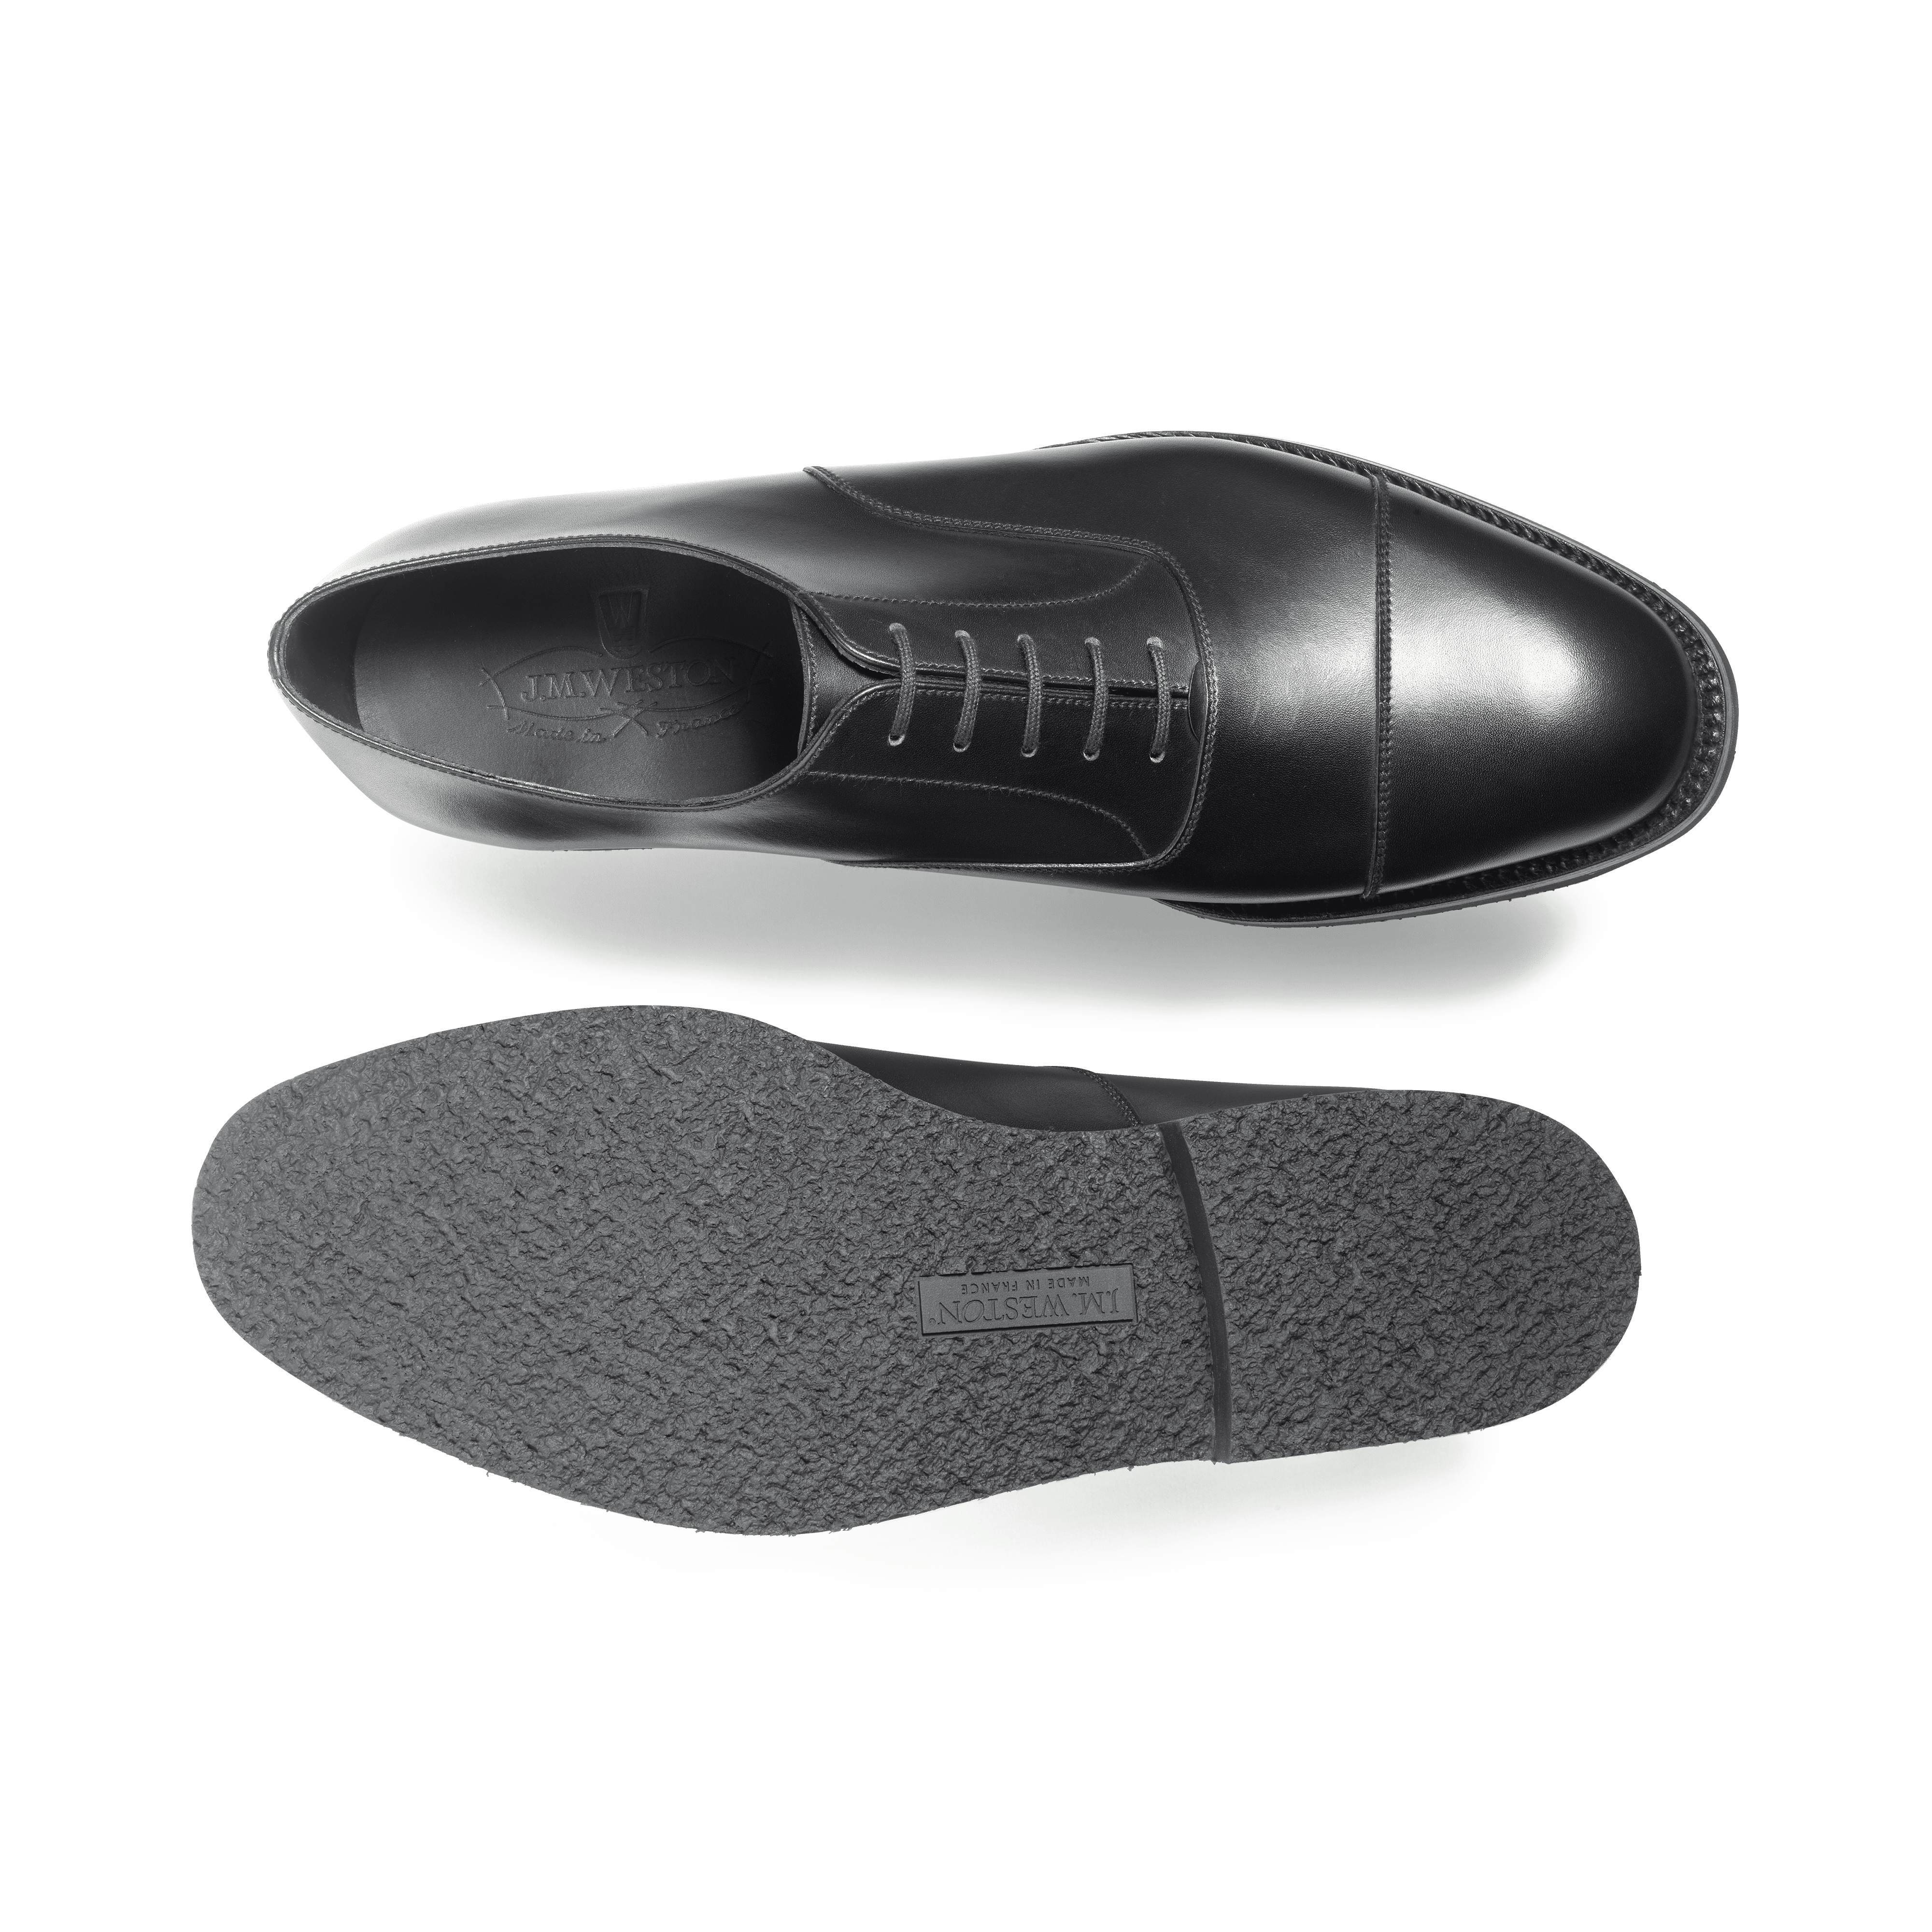 Men's Cap Toe Oxford Shoe With Rubber Sole Black Leather – J.M. Weston